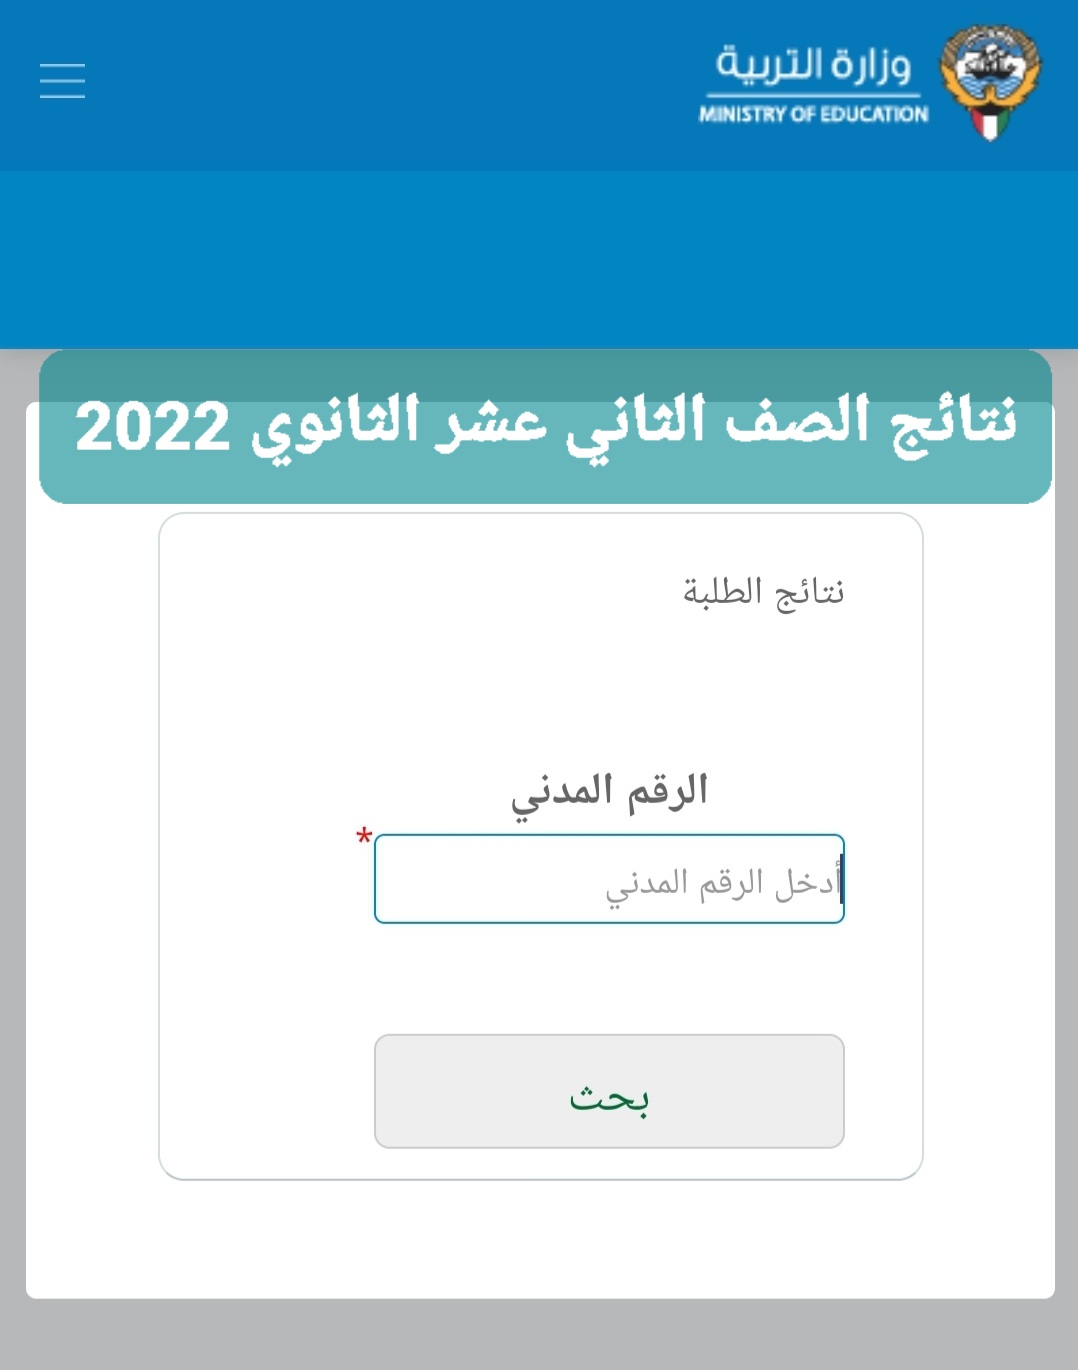 رابط نتائج الصف الثاني عشر الثانوي الكويت بالرقم المدني للفصل الدراسي الثاني 